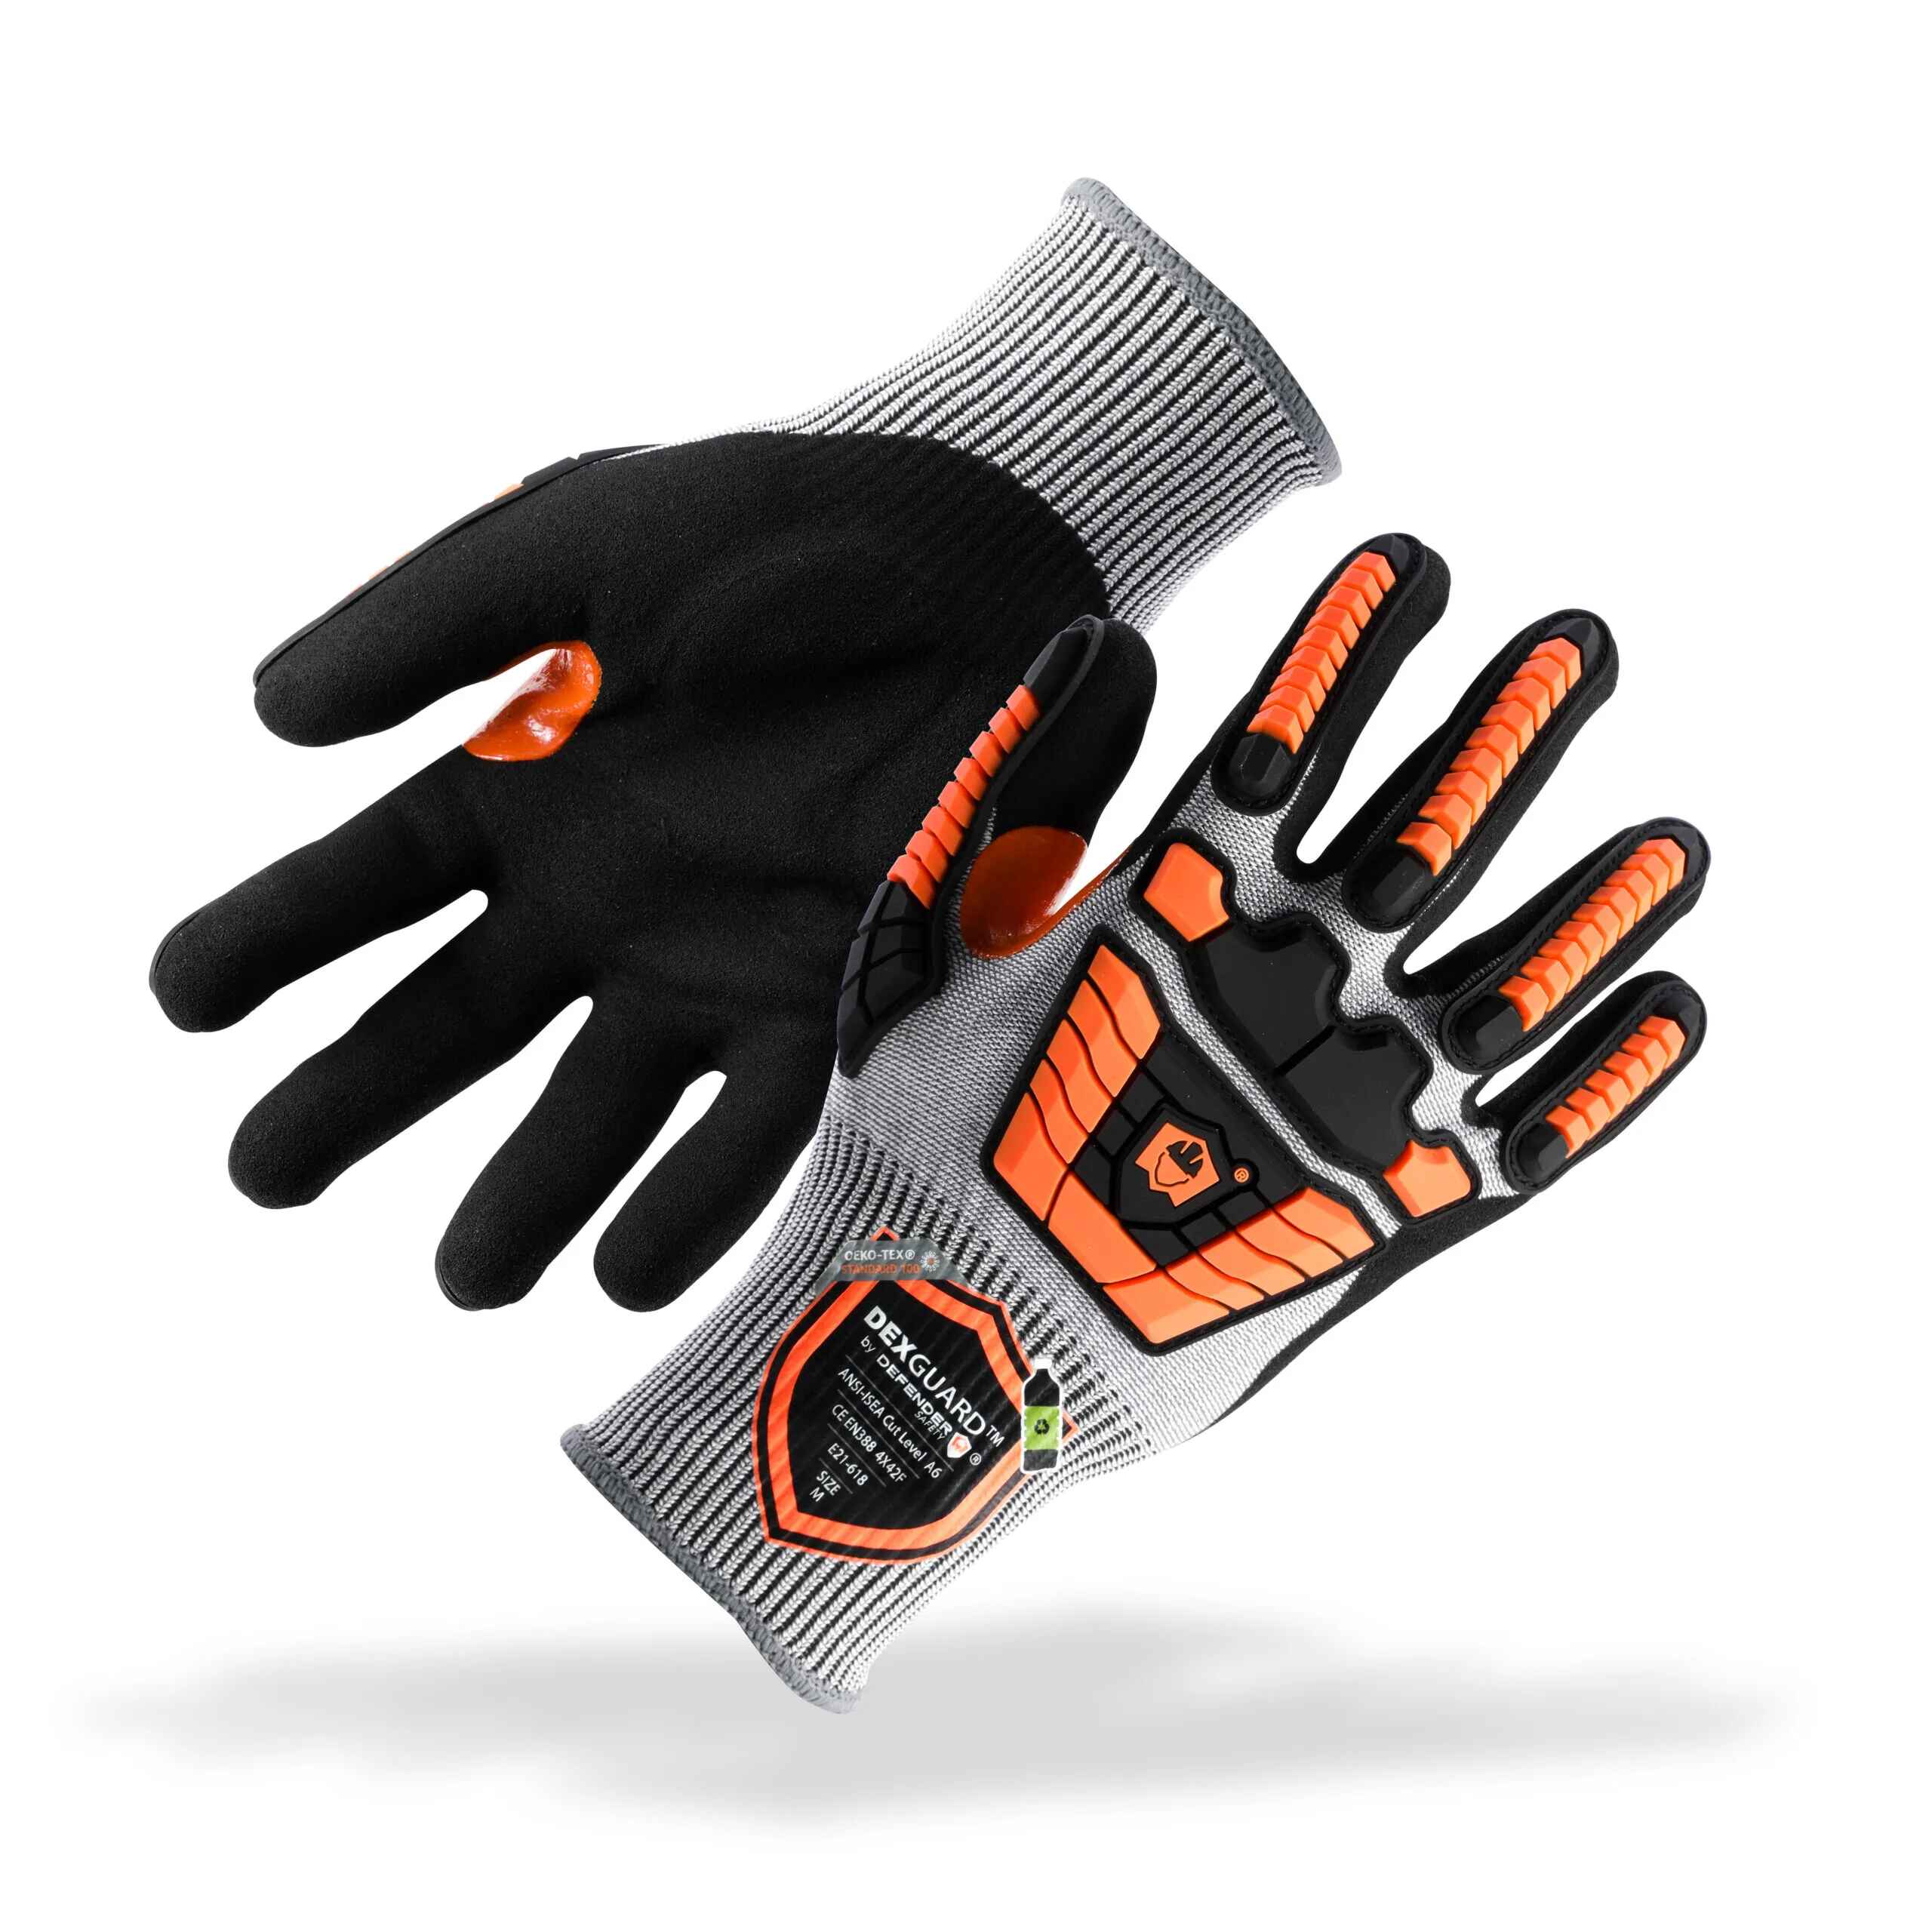 DEXGUARD™ A6 Cut Gloves, 13G Liner, Level 4 Abrasion Resistant, Textur